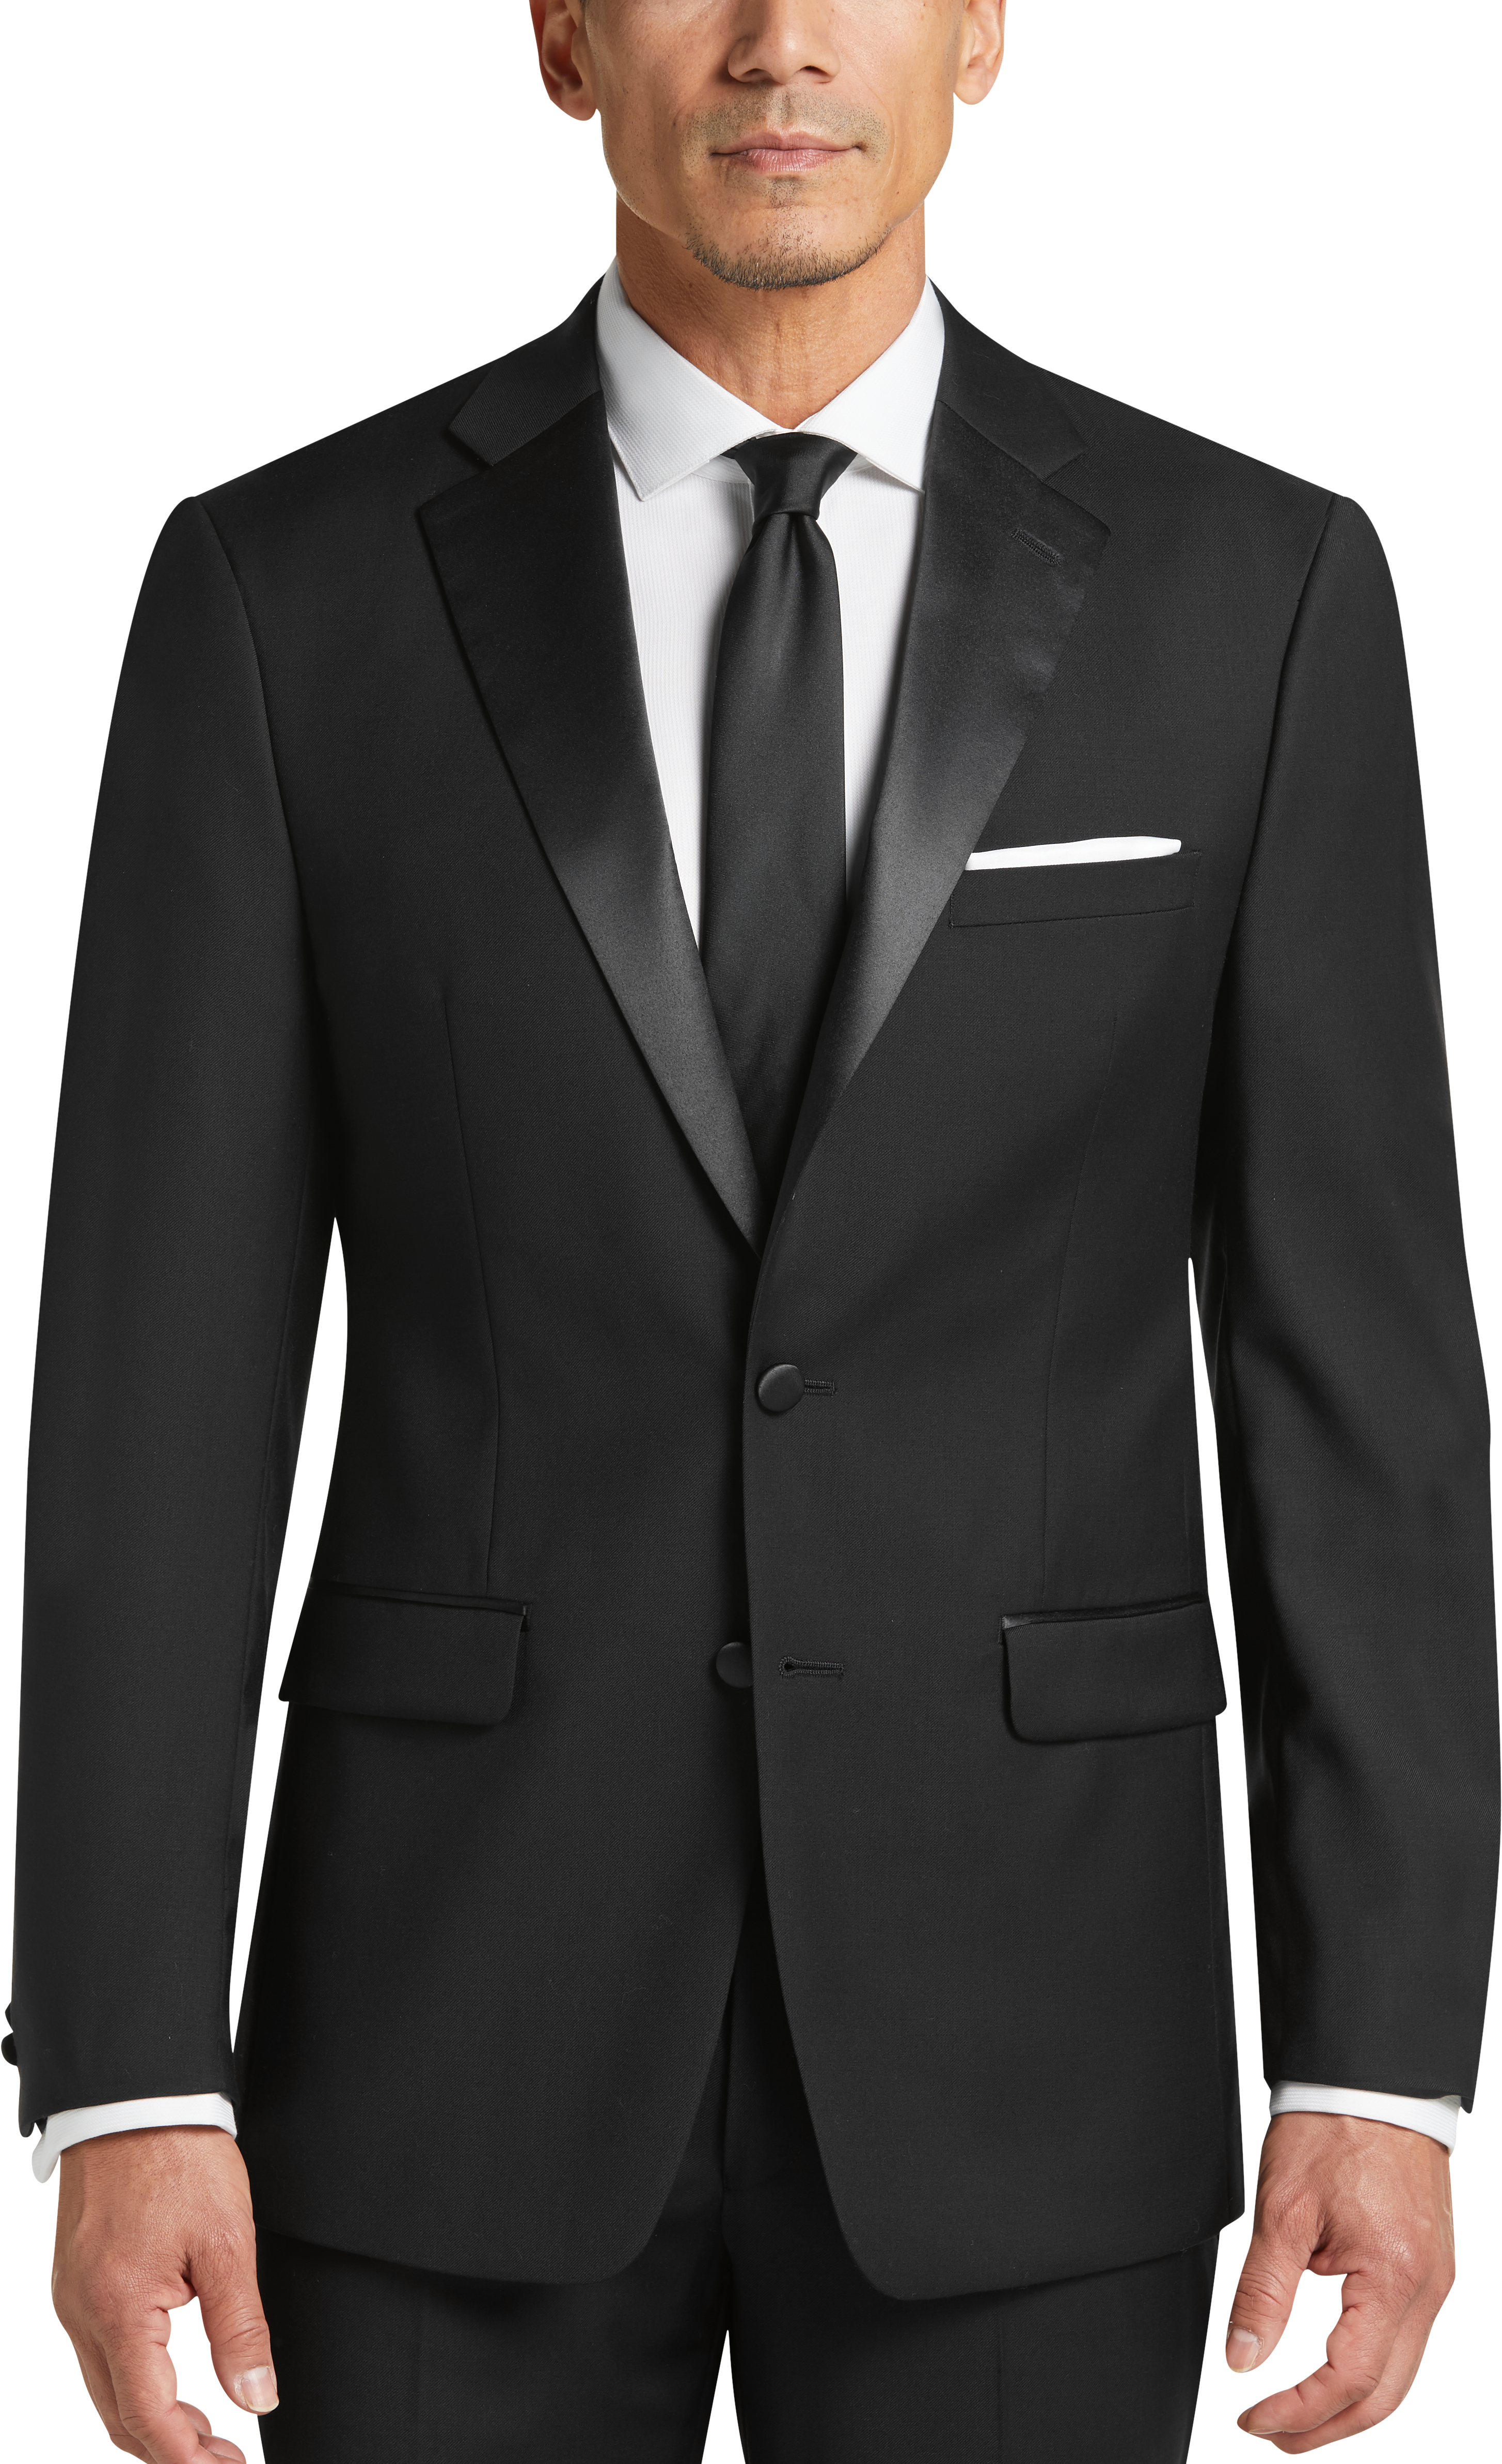 Men's Tuxedo & Black Tie Tuxes - Shop Formal Suits | Men's Wearhouse